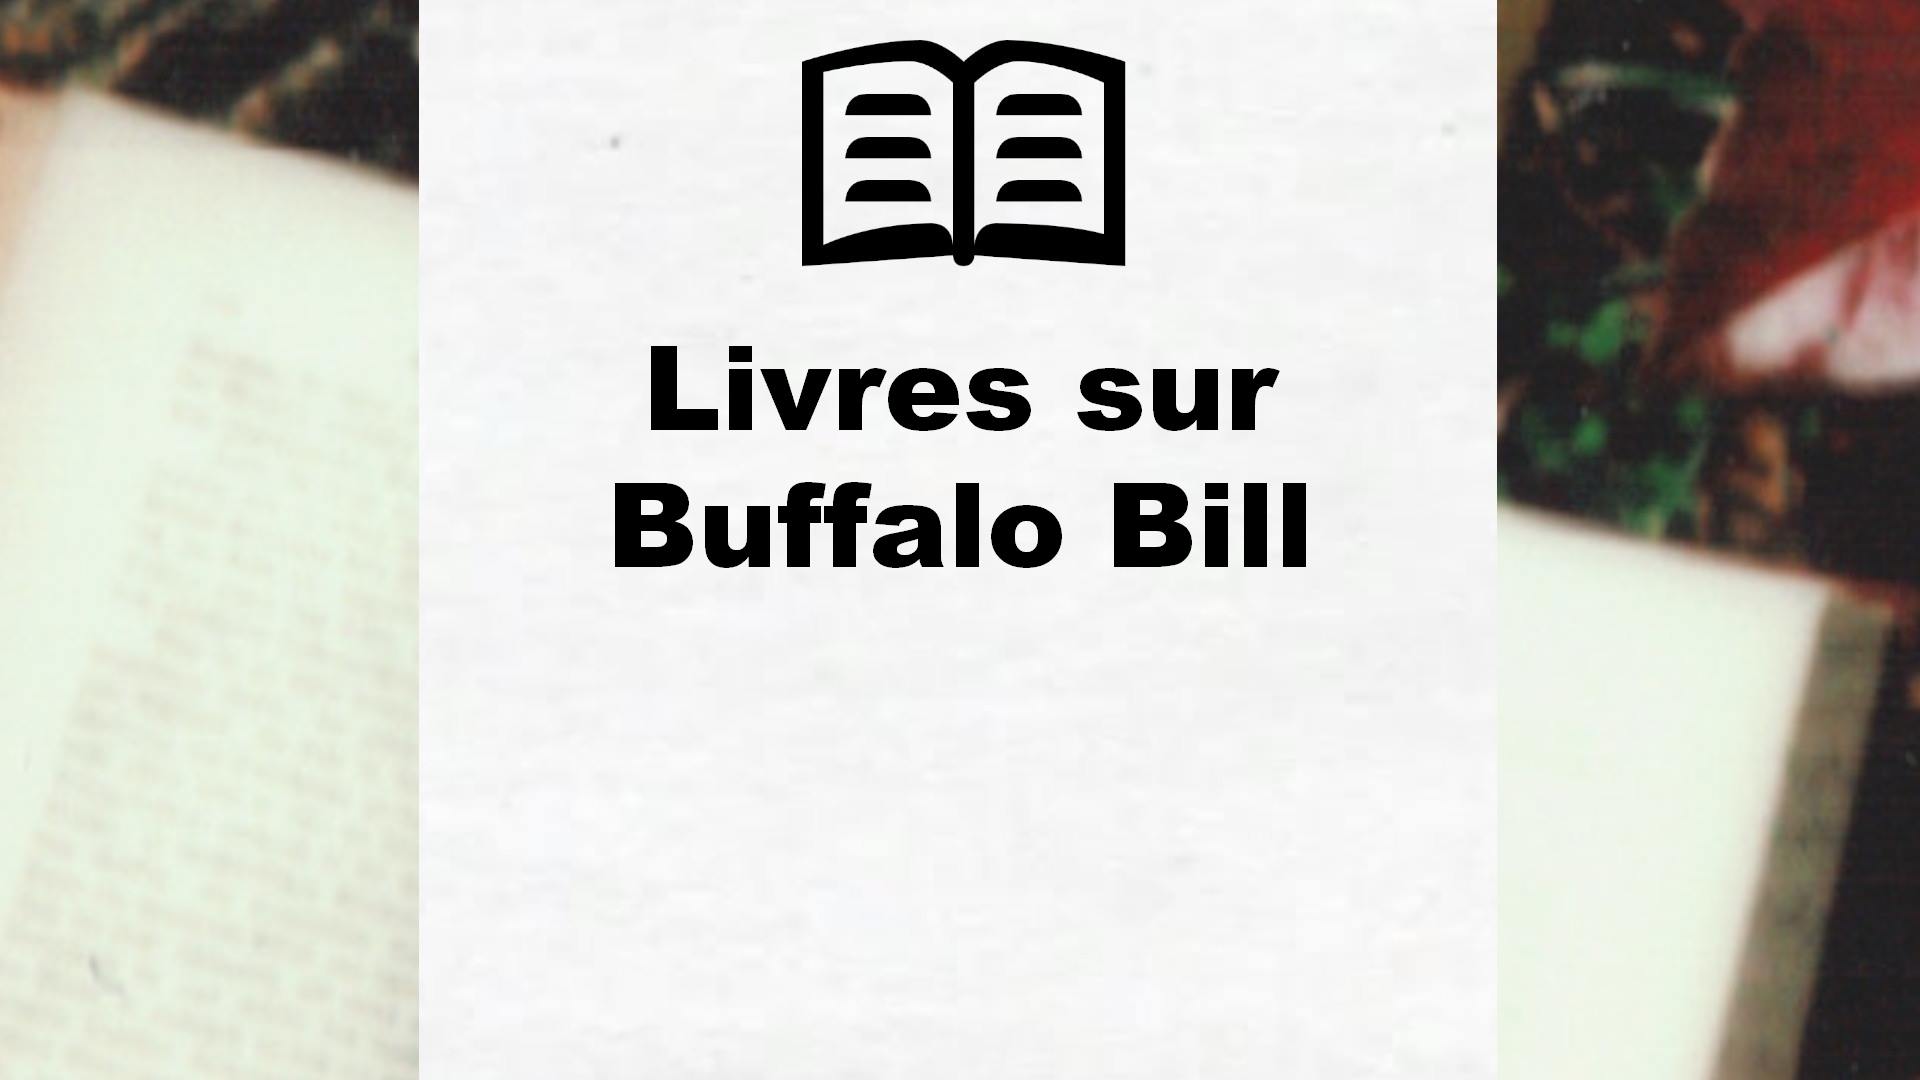 Livres sur Buffalo Bill